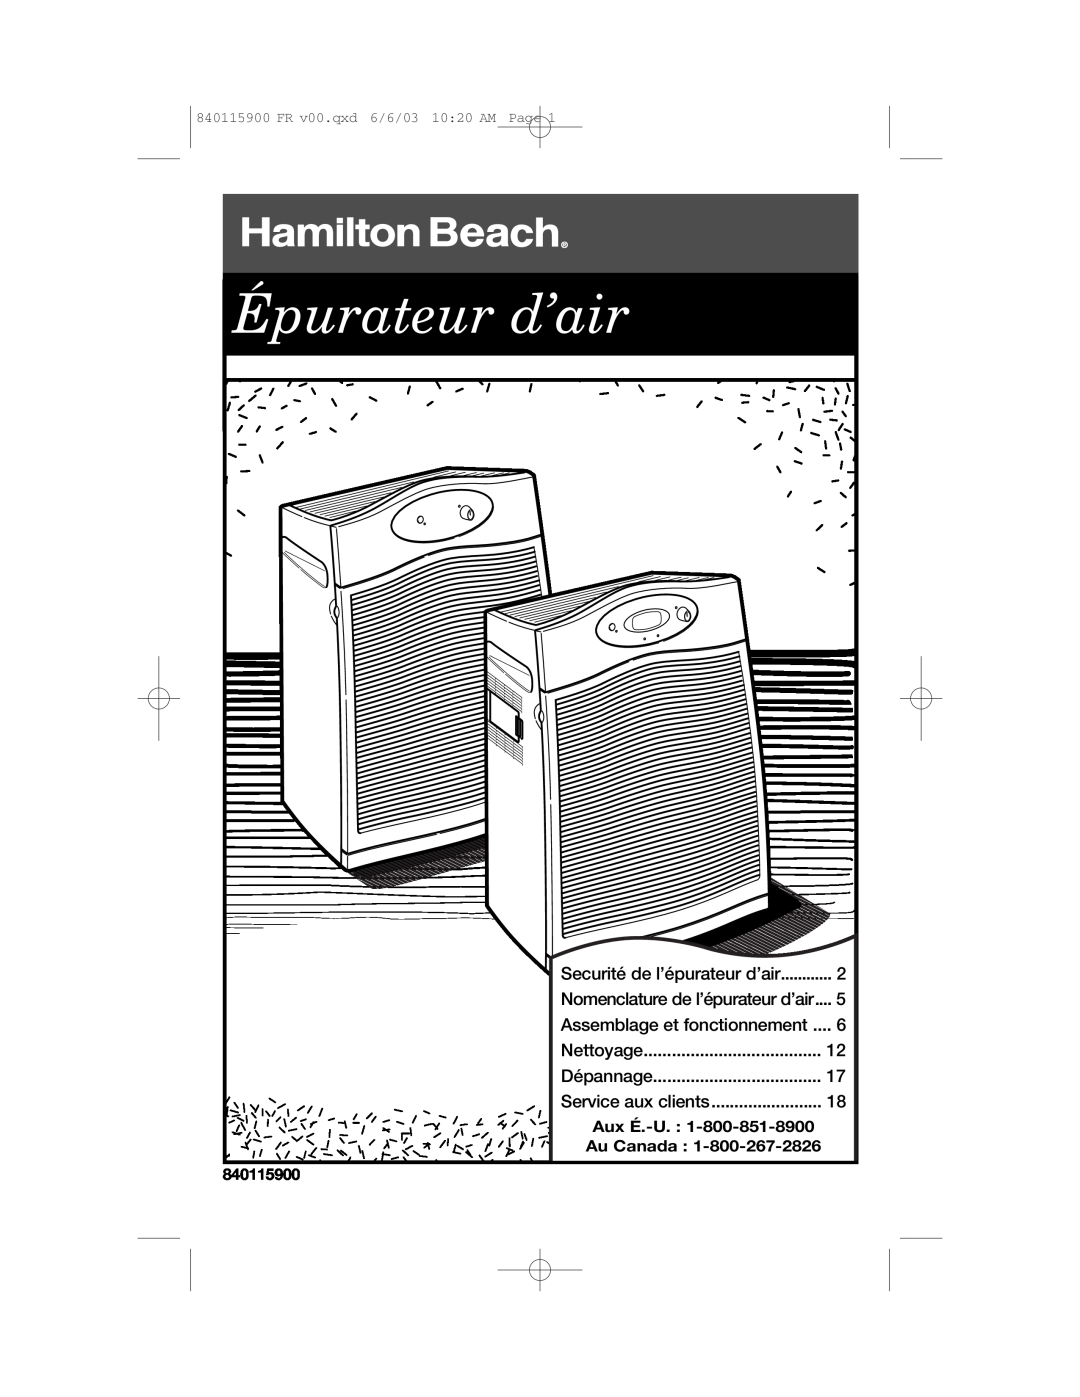 Hamilton Beach 840115900 Épurateur d’air, Securité de l’épurateur d’air, Nomenclature de l’épurateur d’air, Nettoyage 